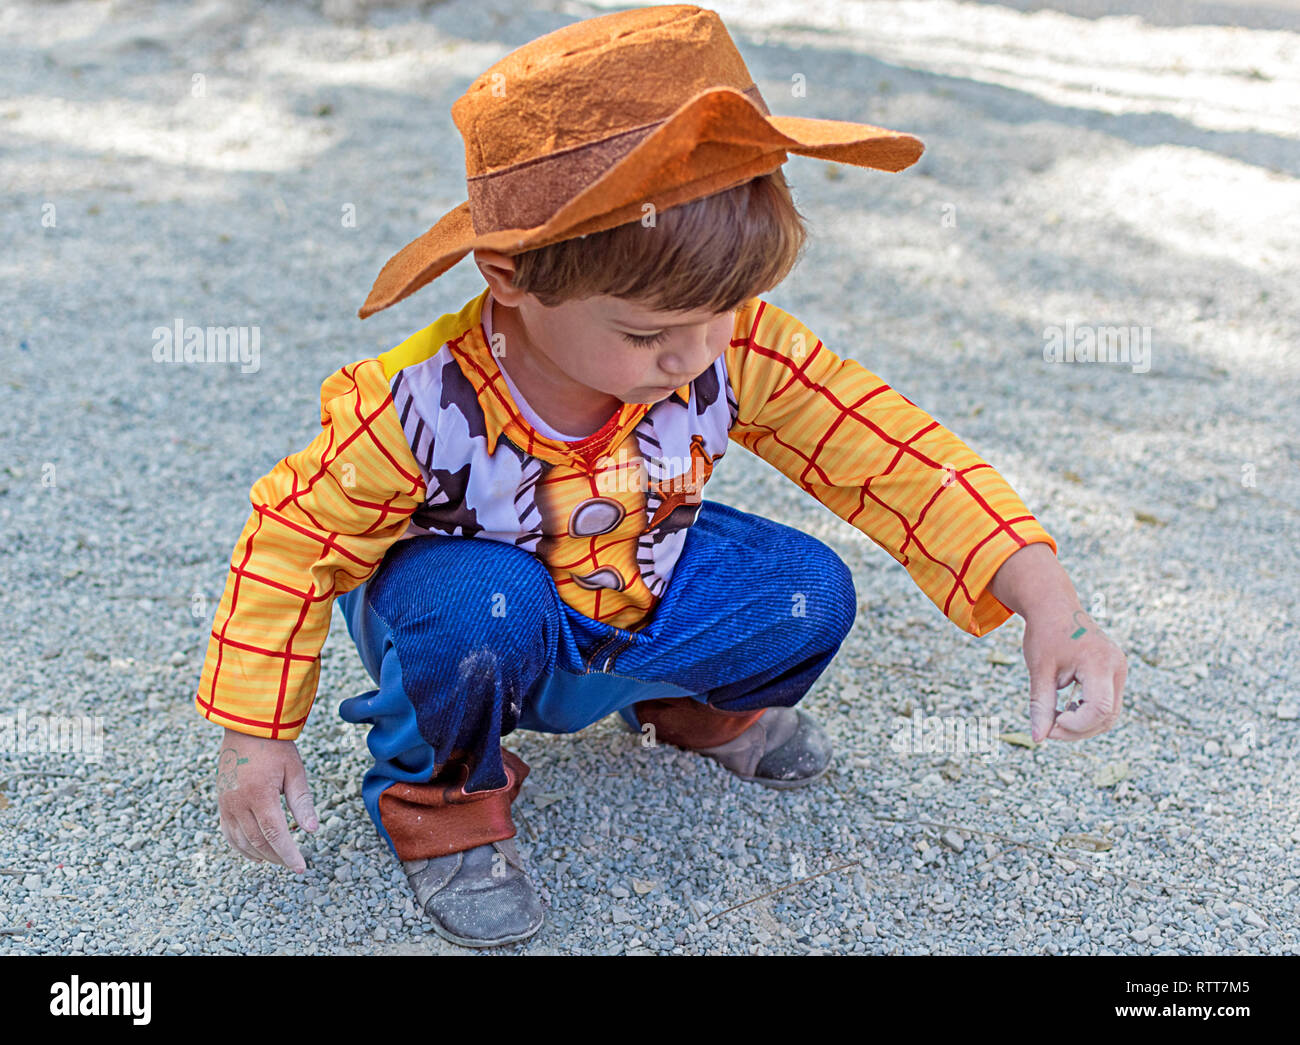 Kleines Kind, Kind, Kinder tragen Woody Toy Story Kostüm spielen auf dem Boden mit dem Schmutz und Sand, die schmutzigen Hände. Kindheit Kreativität in Spanien im Jahr 2019. Stockfoto